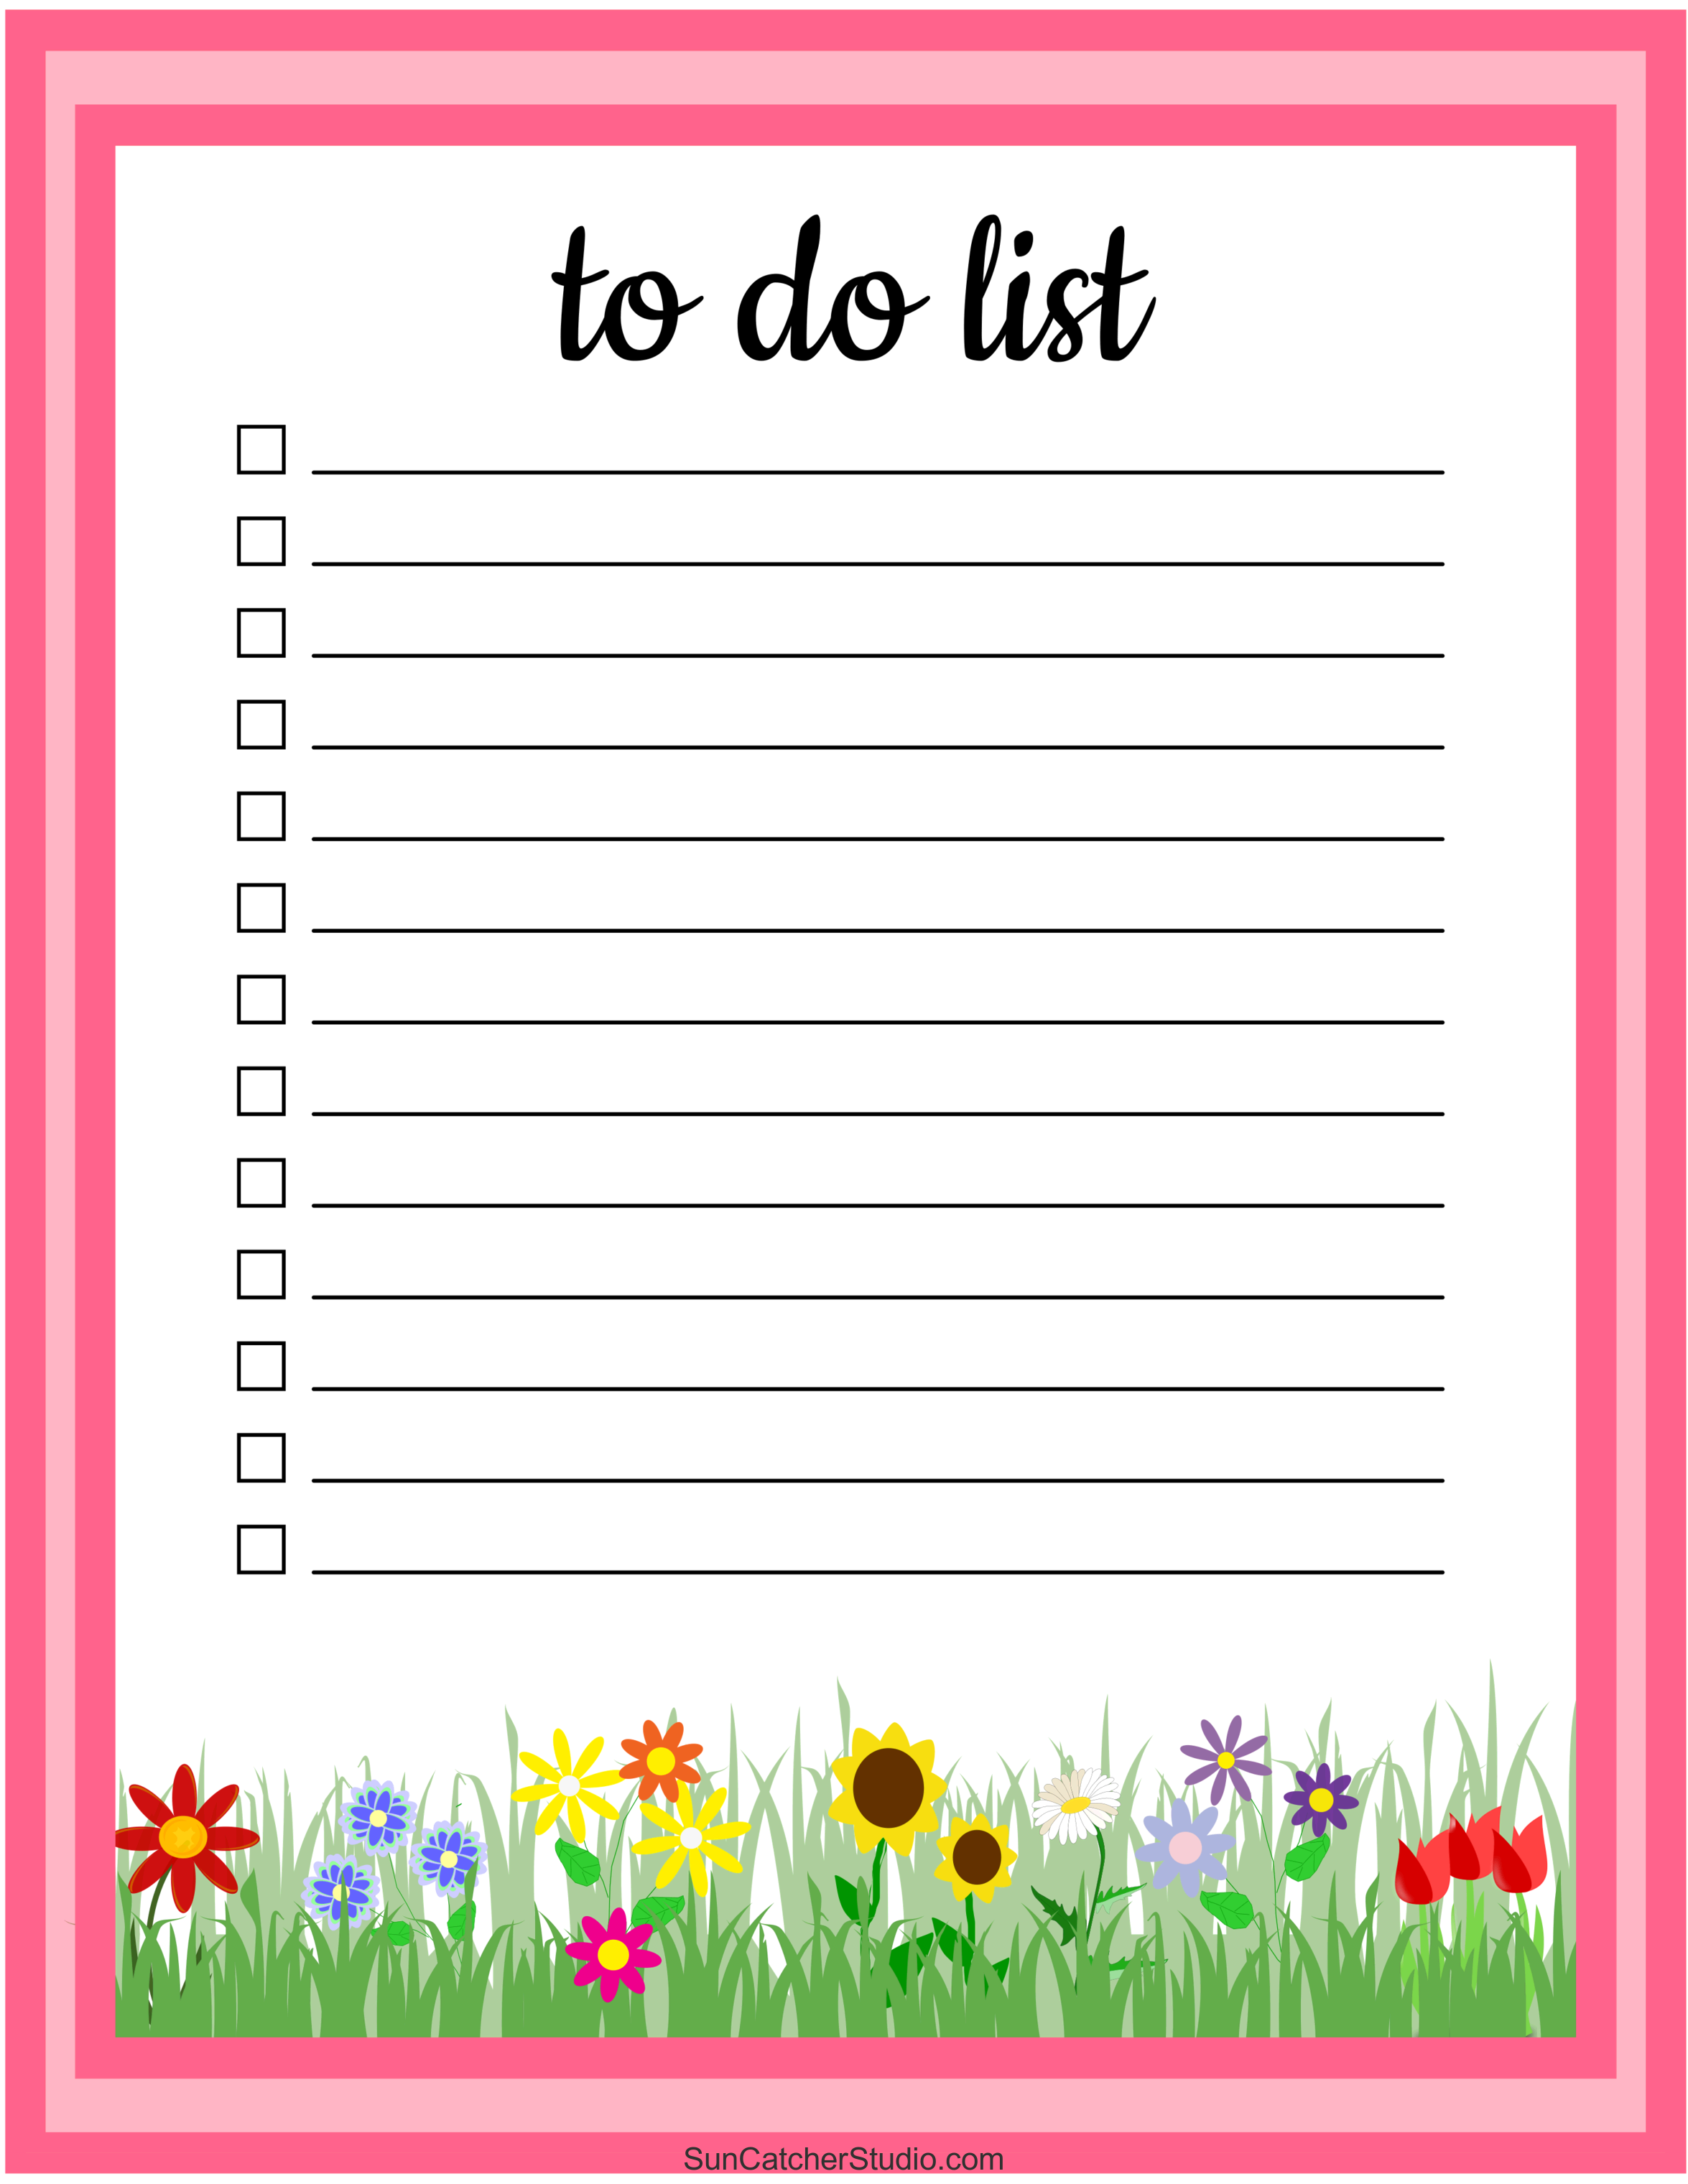 20+ Printable To Do Lists and Task List Templates